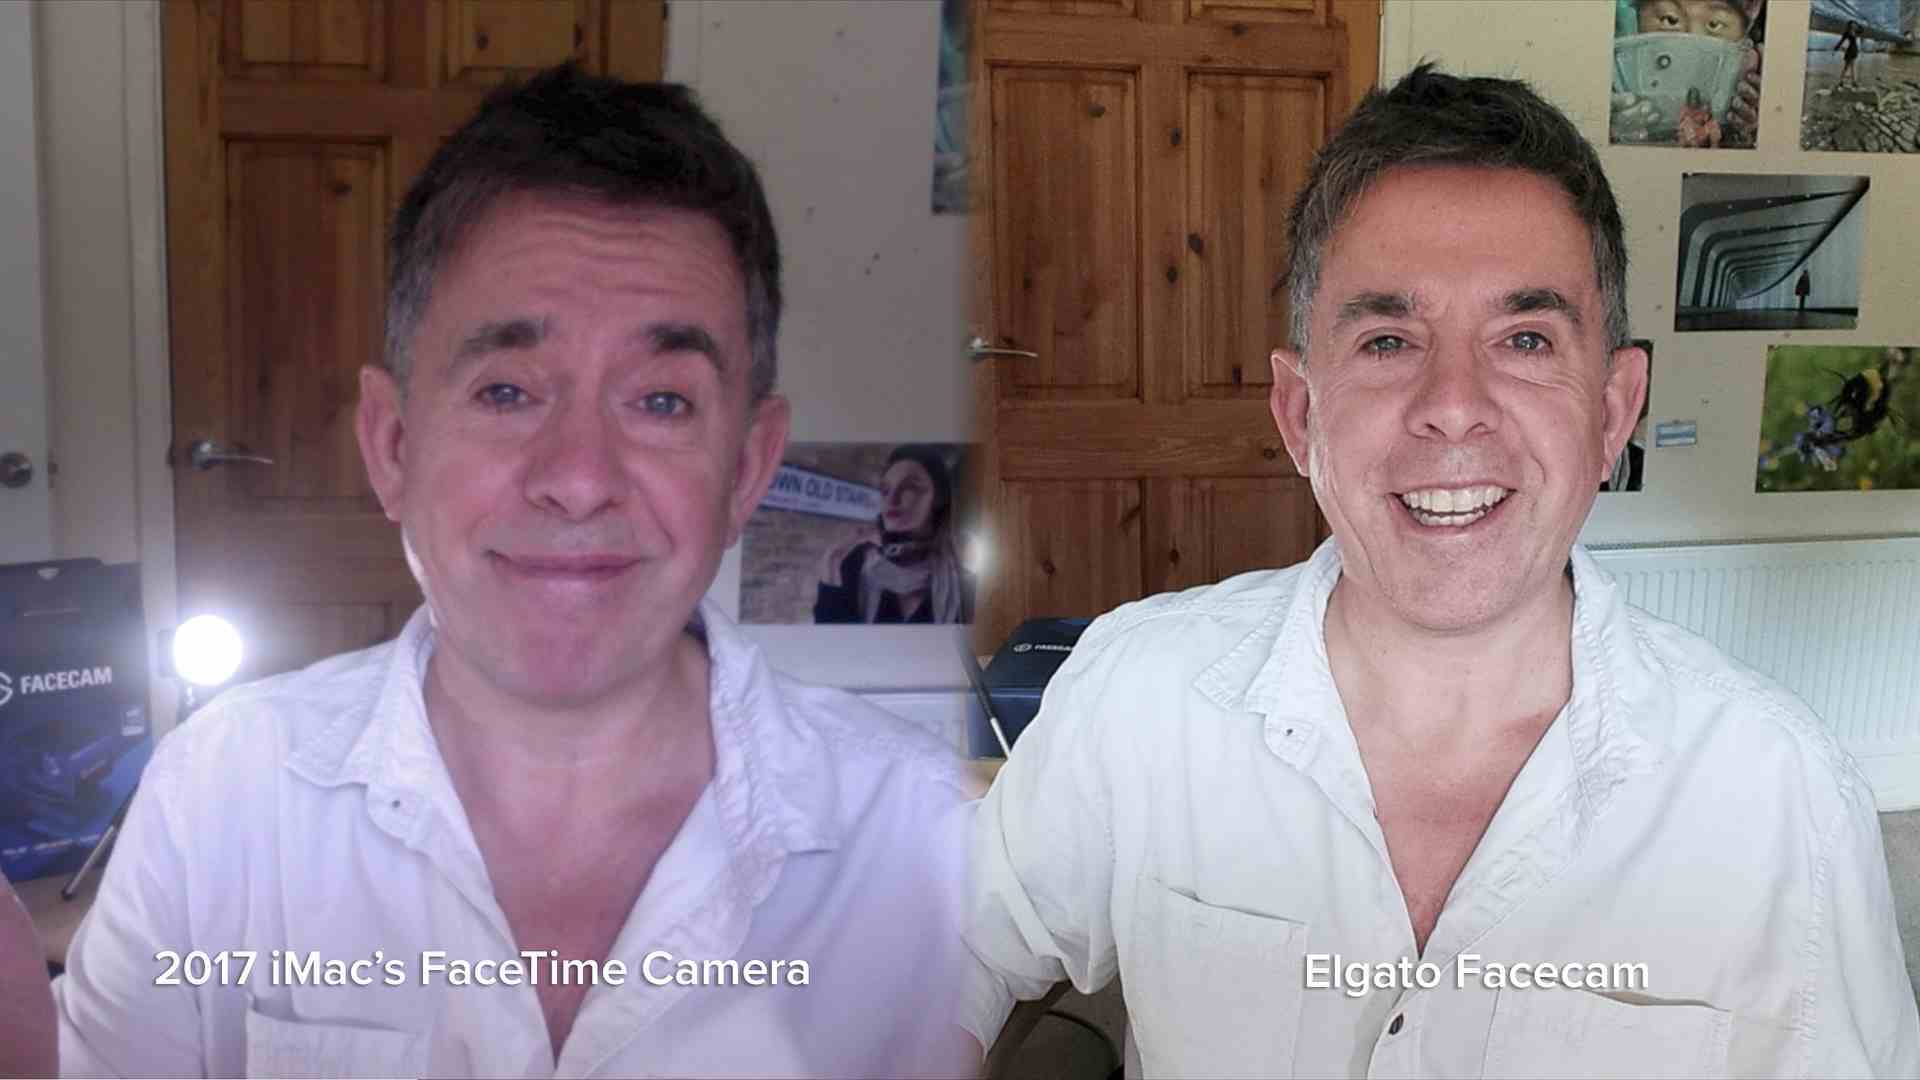 Elgato Facecam inceleme görüntüsü, ünlü yorumcu George Carins'in bir kez eski bir web kamerası aracılığıyla ve bir kez de çok daha iyi görünen Elgato Facecam ile çekilen iki fotoğrafını gösteriyor.